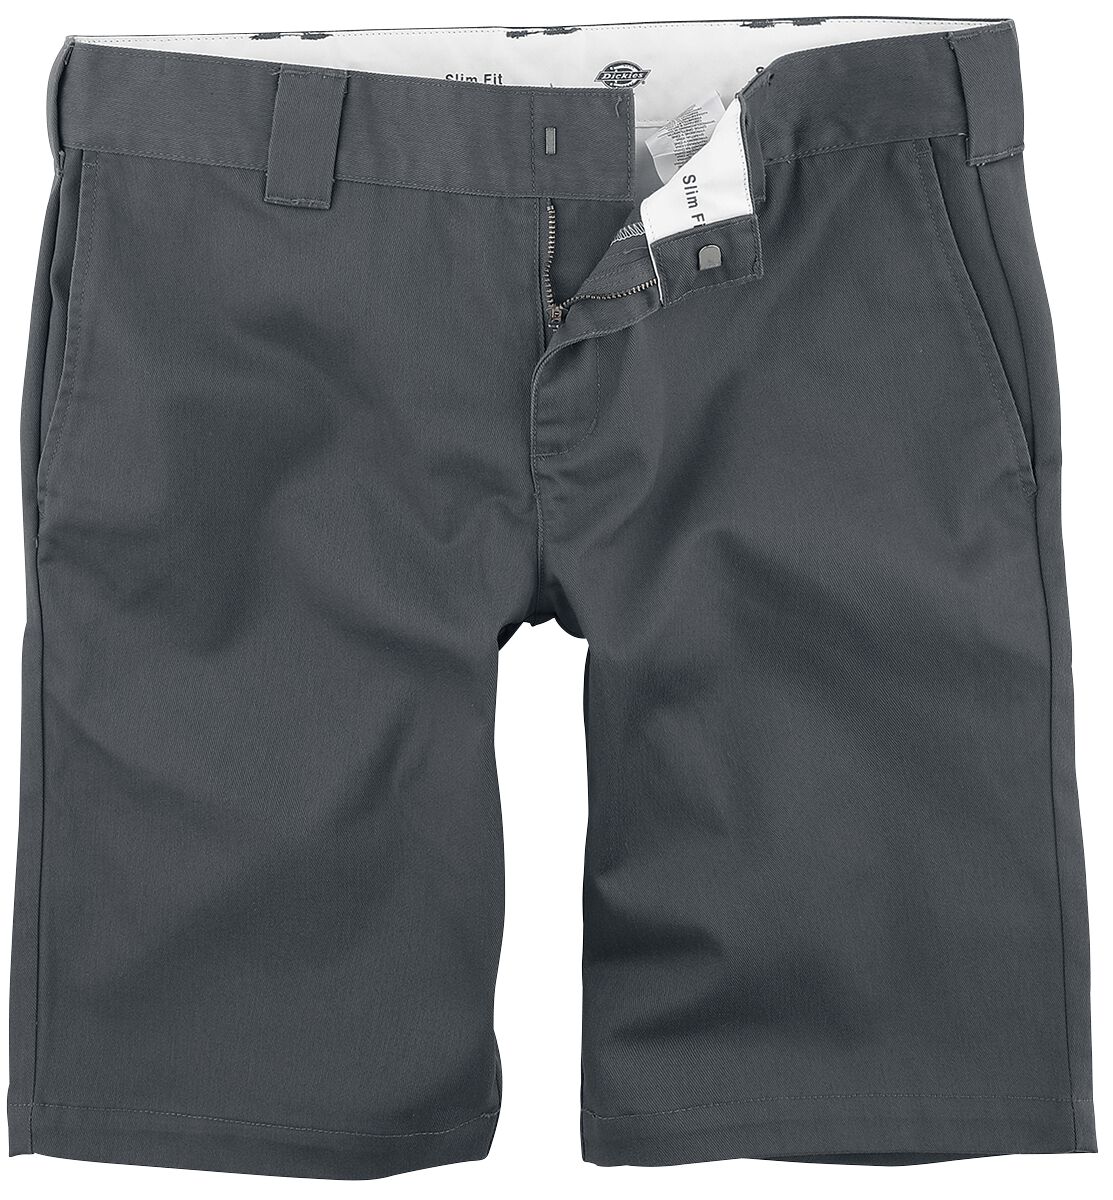 Dickies Short - Slim Fit Short - 30 bis 40 - für Männer - Größe 31 - charcoal